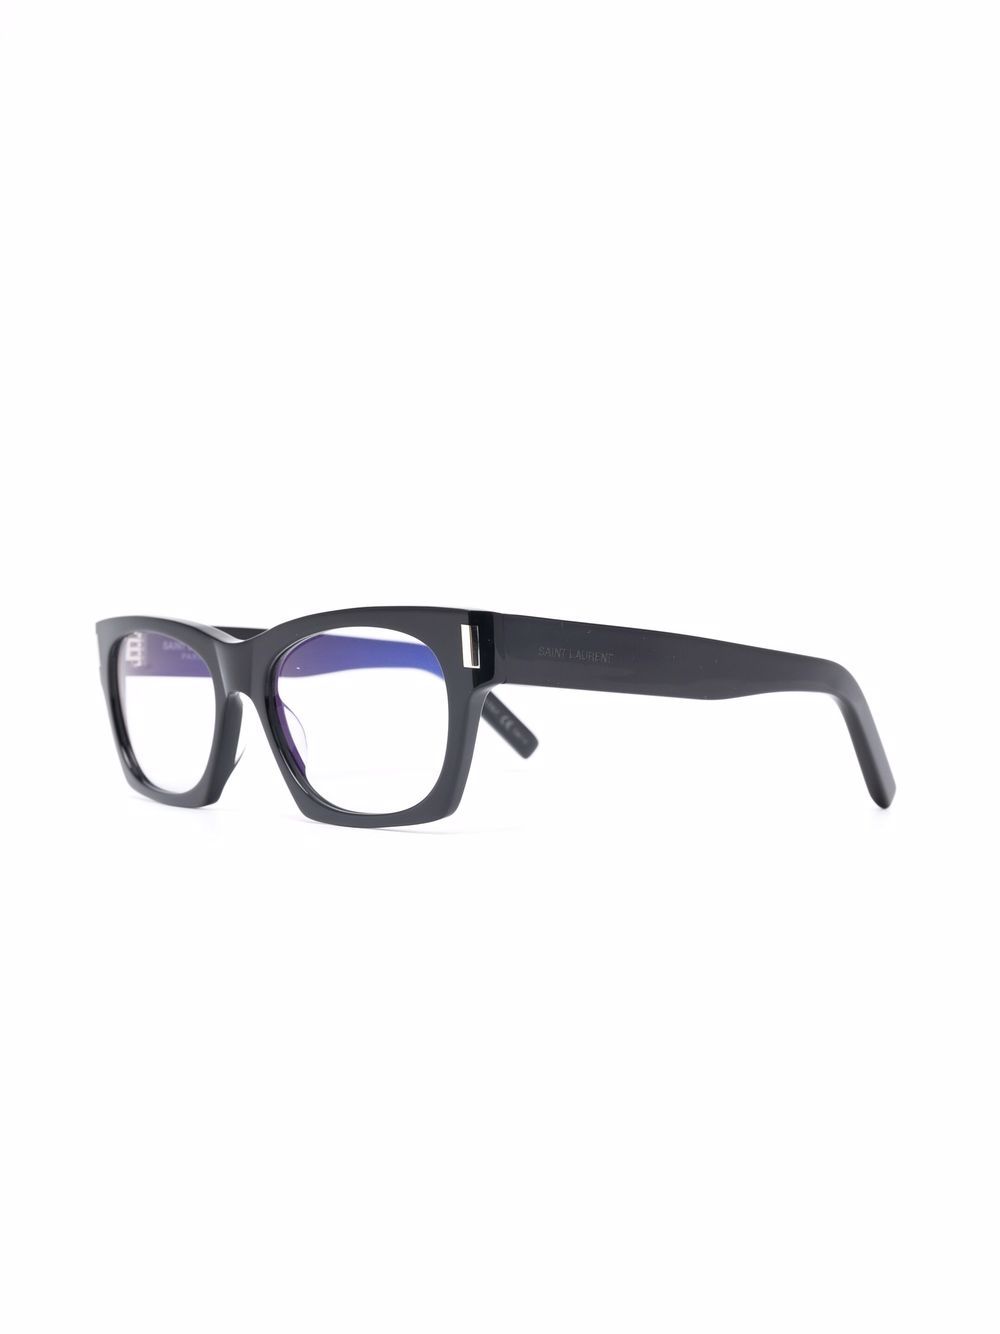 фото Saint laurent eyewear очки в квадратной оправе